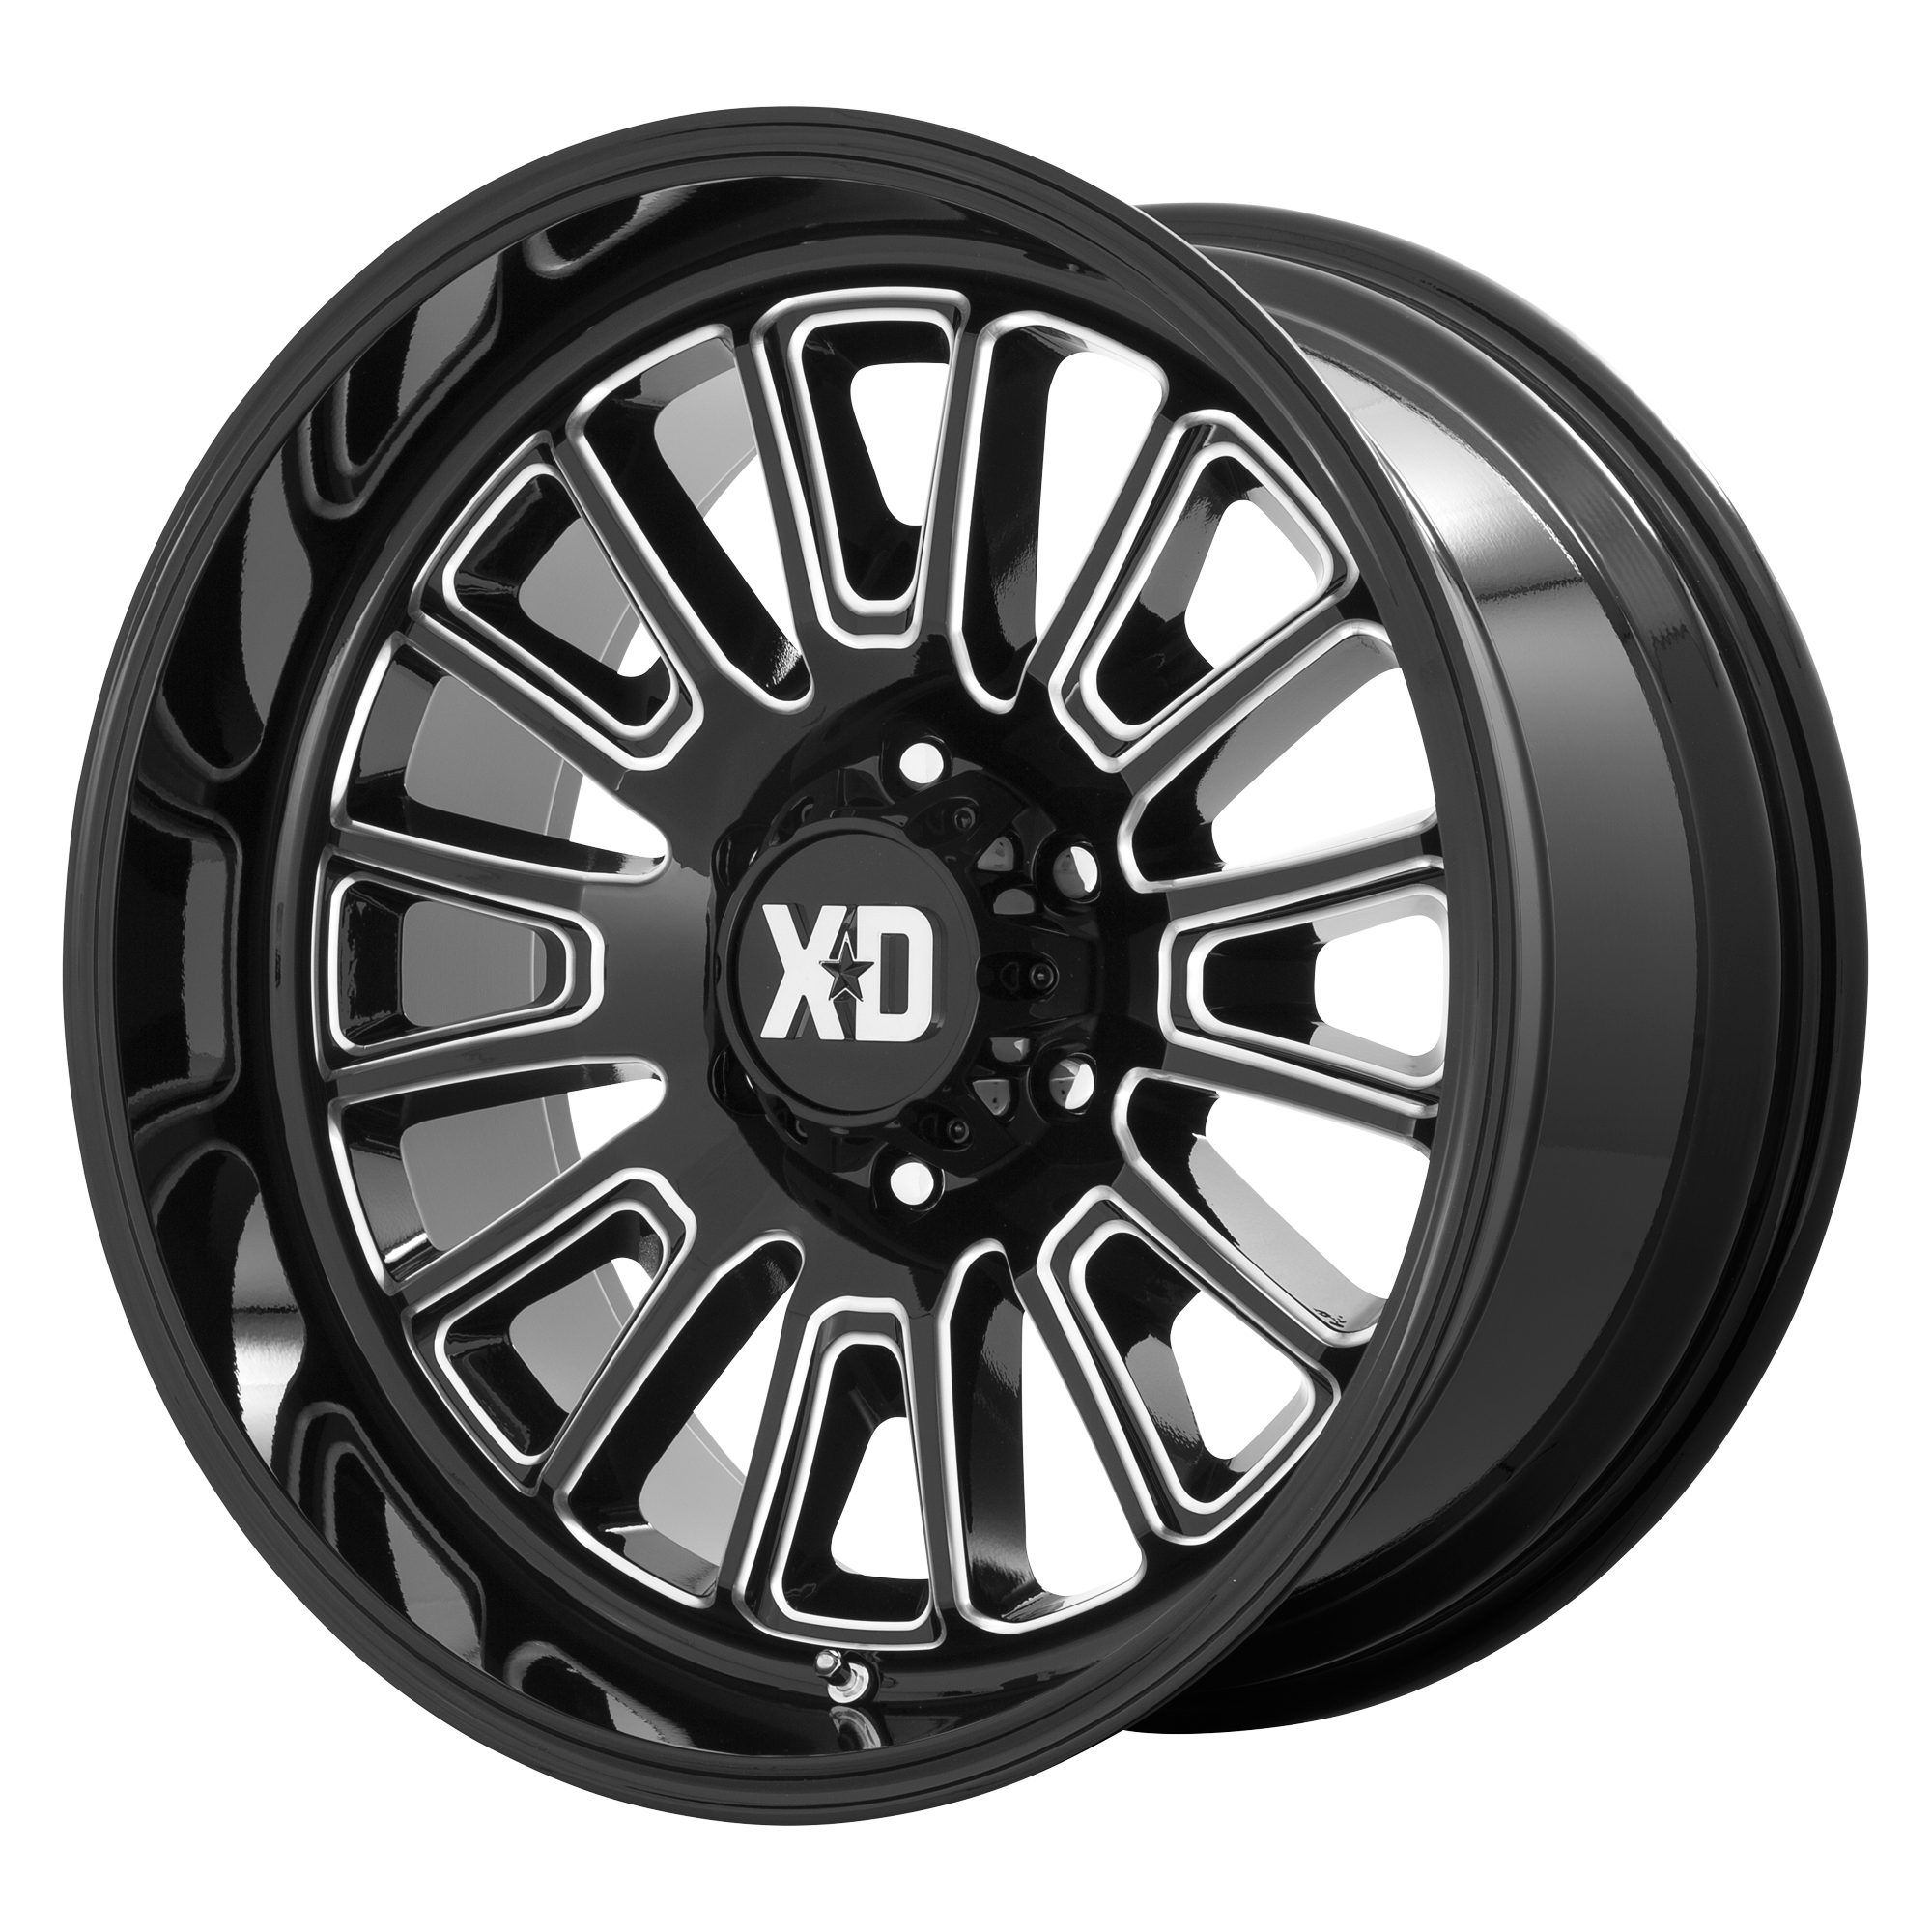 XD 20"x10" Non-Chrome Gloss Black Milled Custom Wheel ARSWCWXD86421068318N